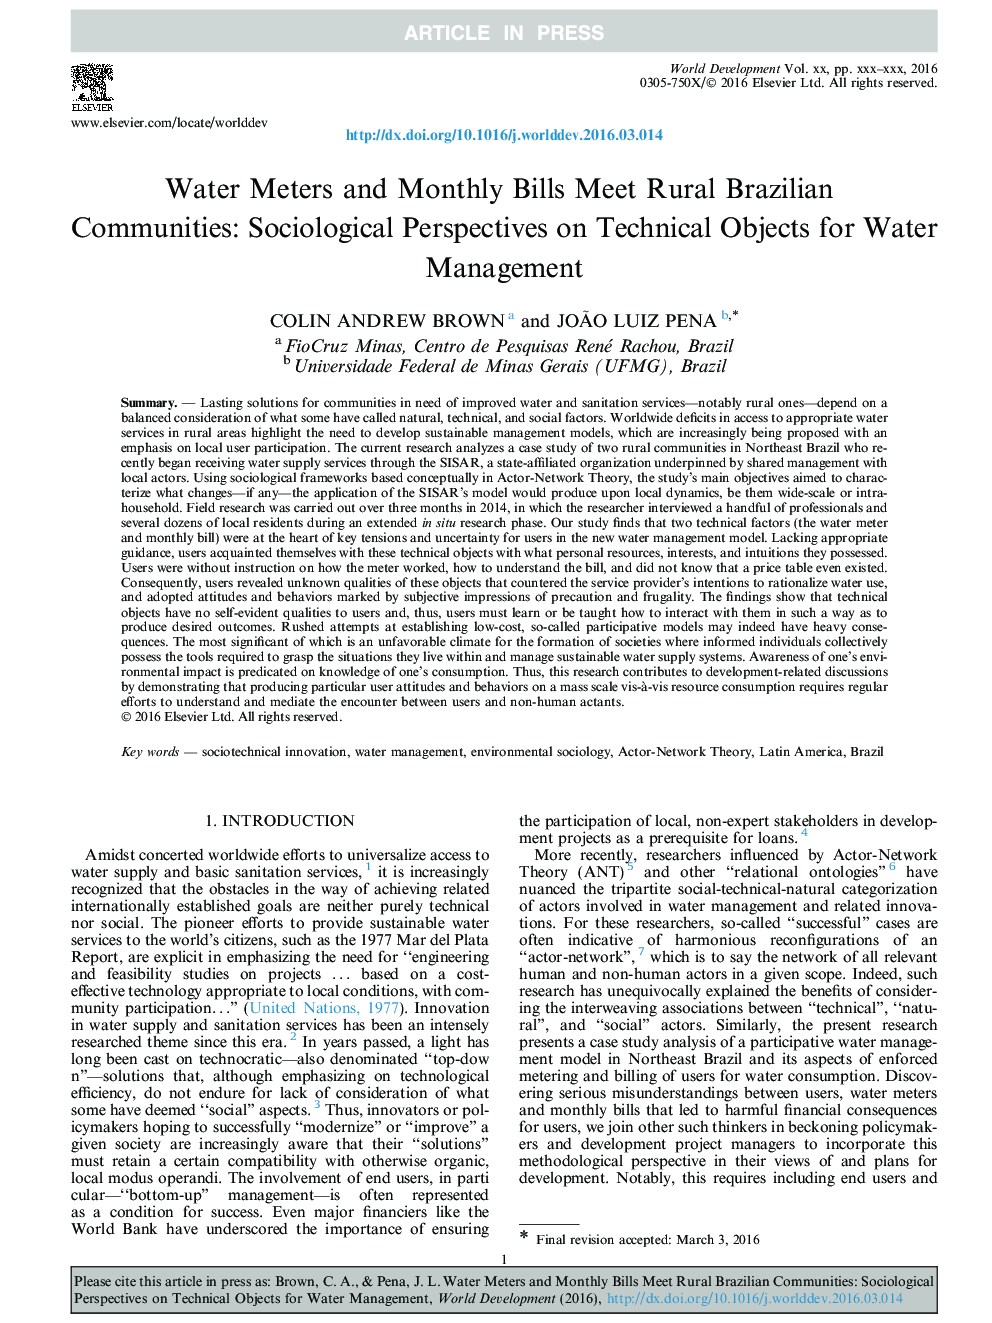 مترهای آب و صورتحساب ماهانه با انجمن های روستایی برزیل روبرو می شوند: دیدگاه های جامعه شناختی در مورد اشیاء فنی برای مدیریت آب 